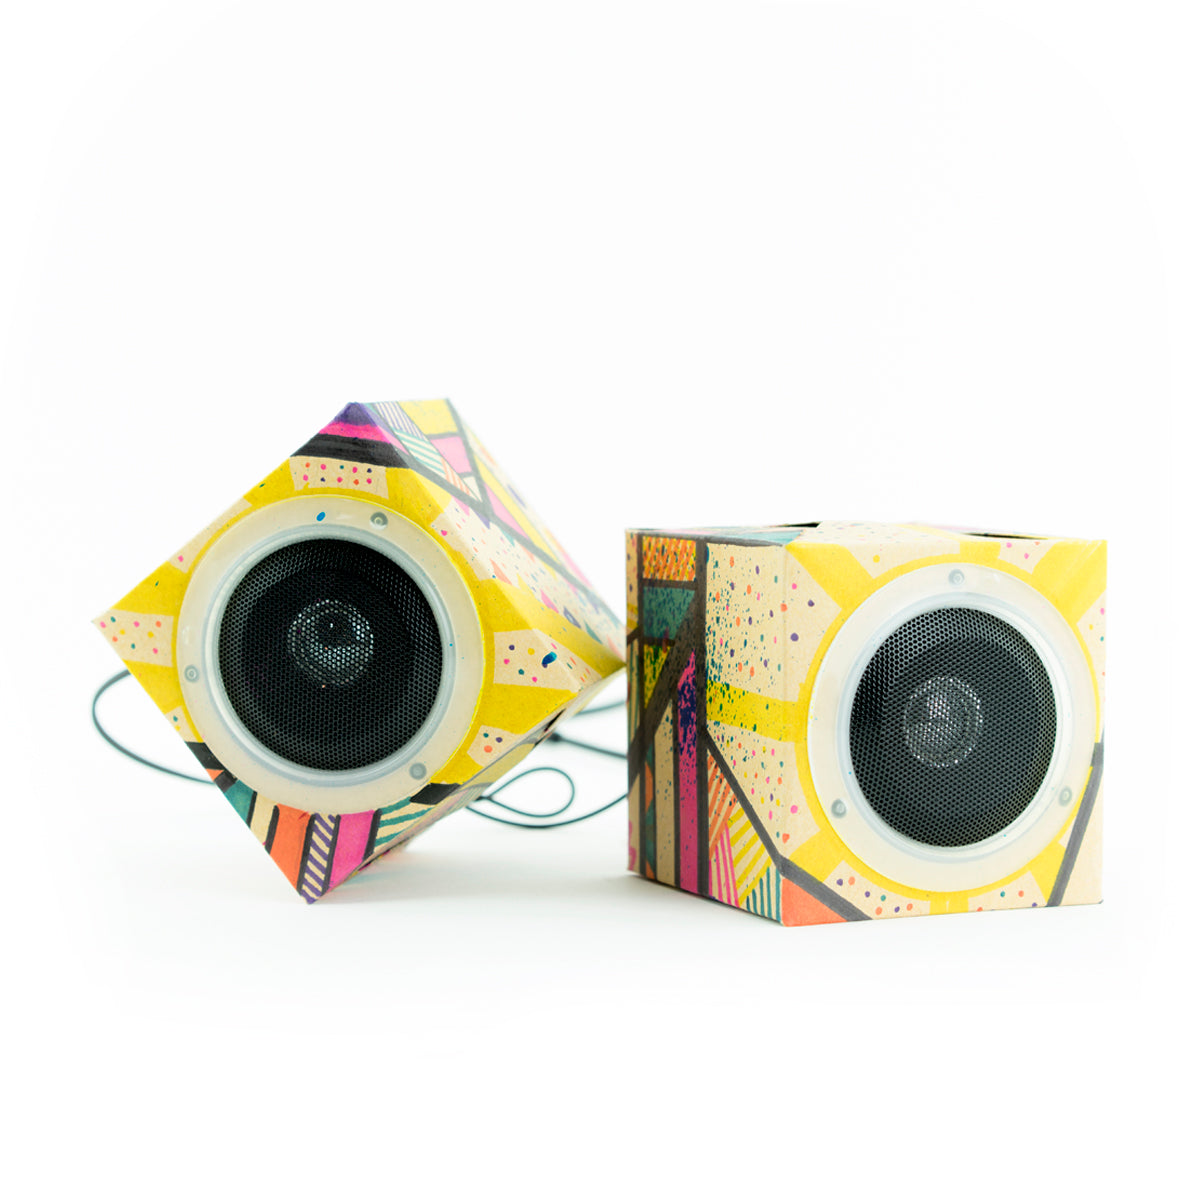 Design Out Loud! Cardboard Speakers